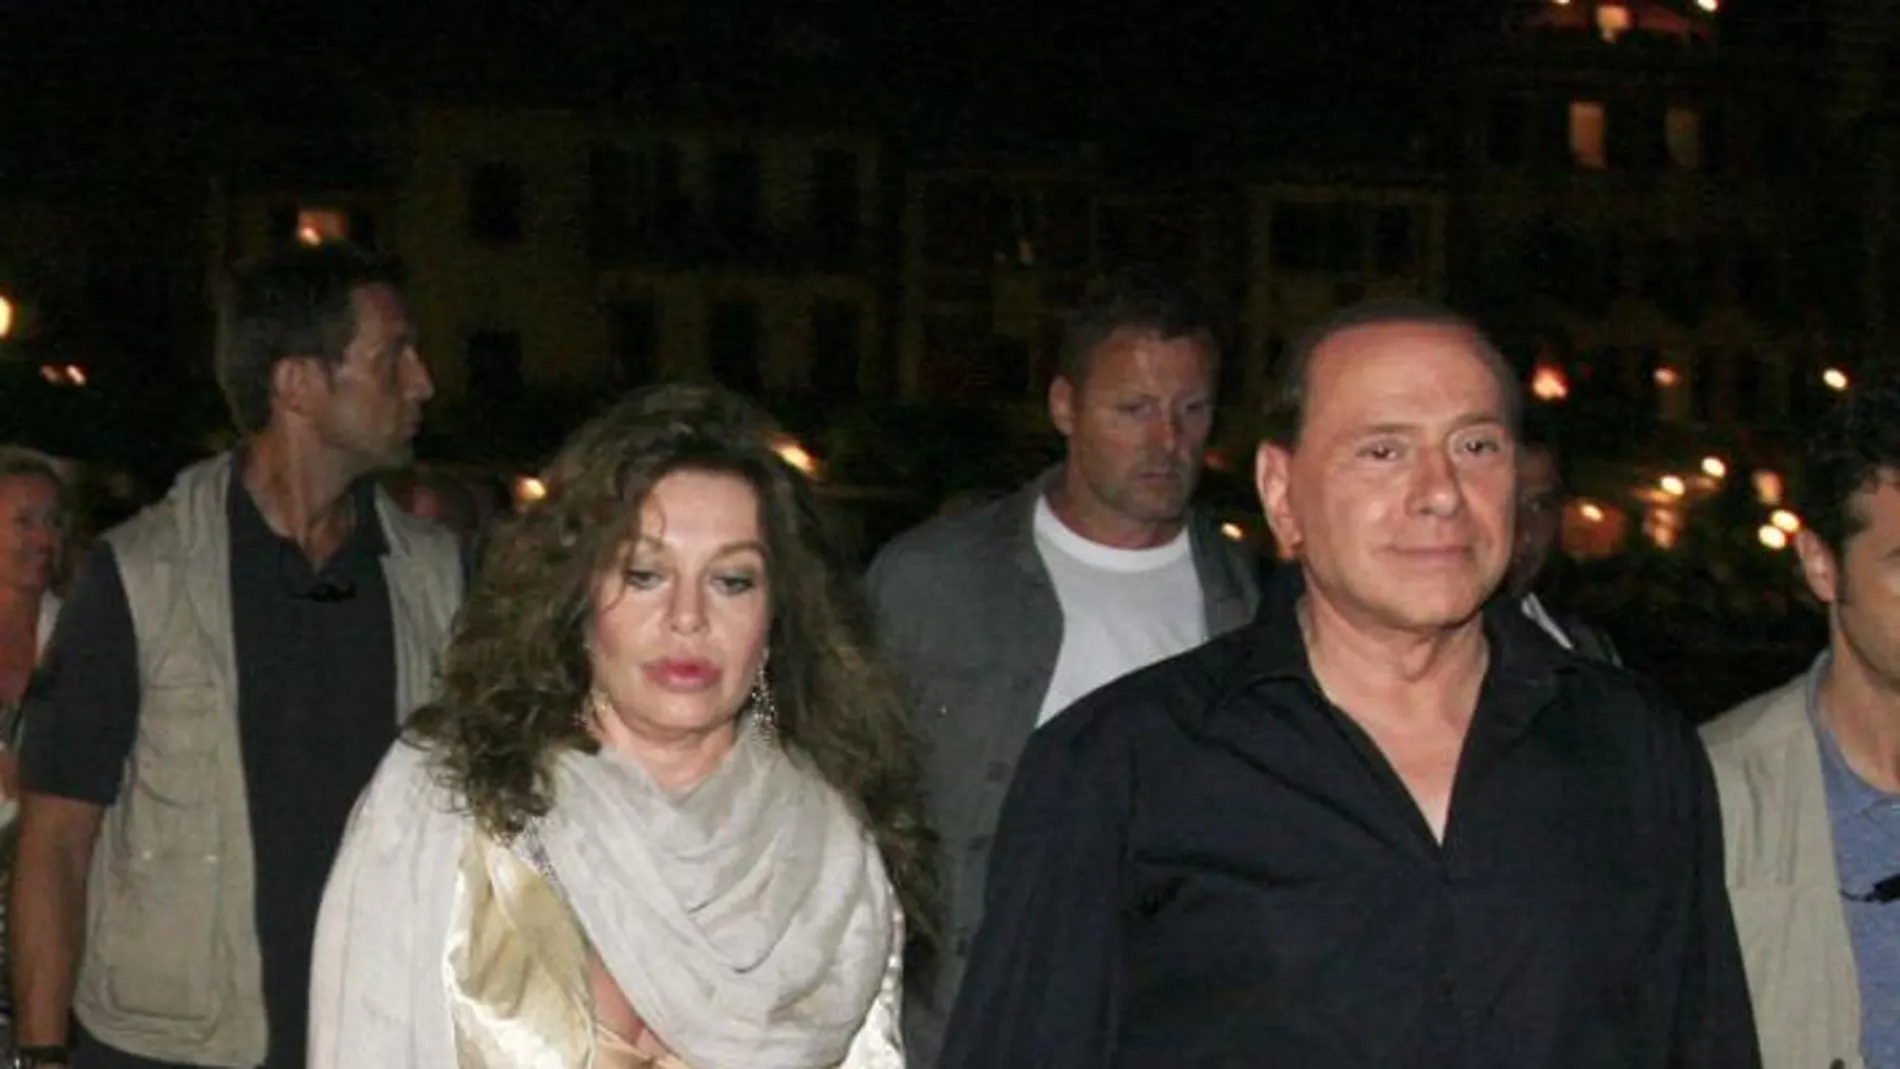 El matrimonio de Berlusconi y Lario duró 19 años, tiempo en el que tuvieron tres hijos, Barbara, Eleonora y Luigi